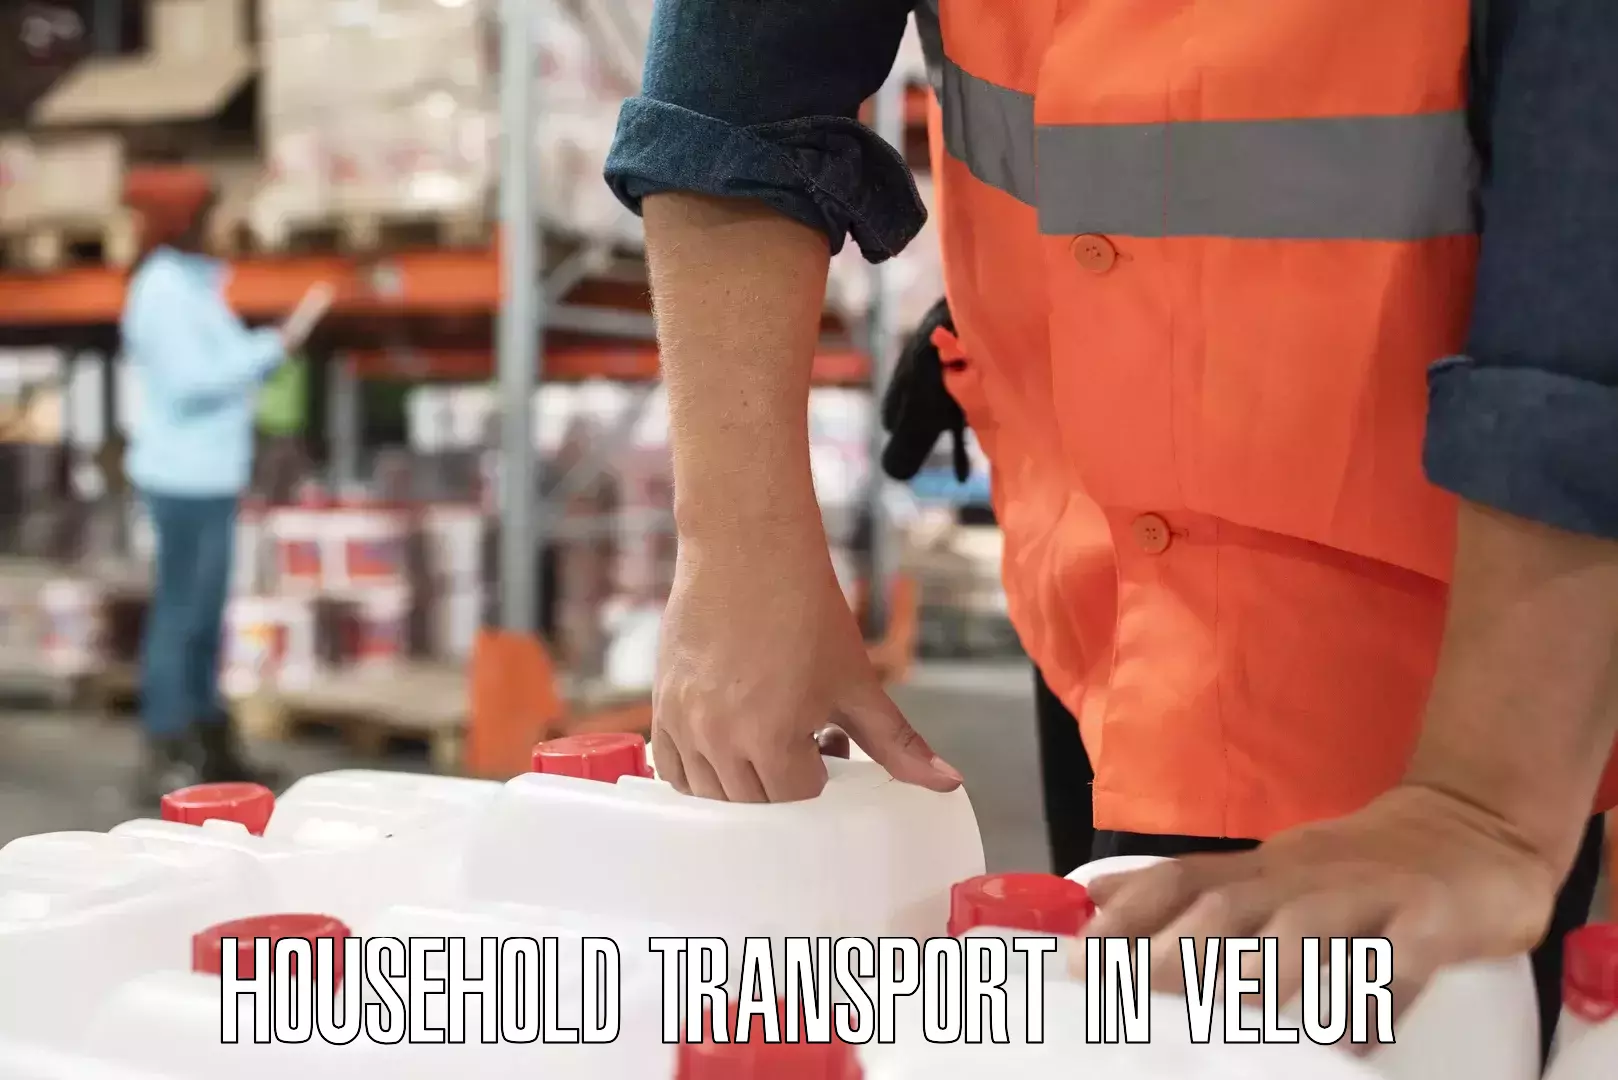 Skilled household transport in Velur